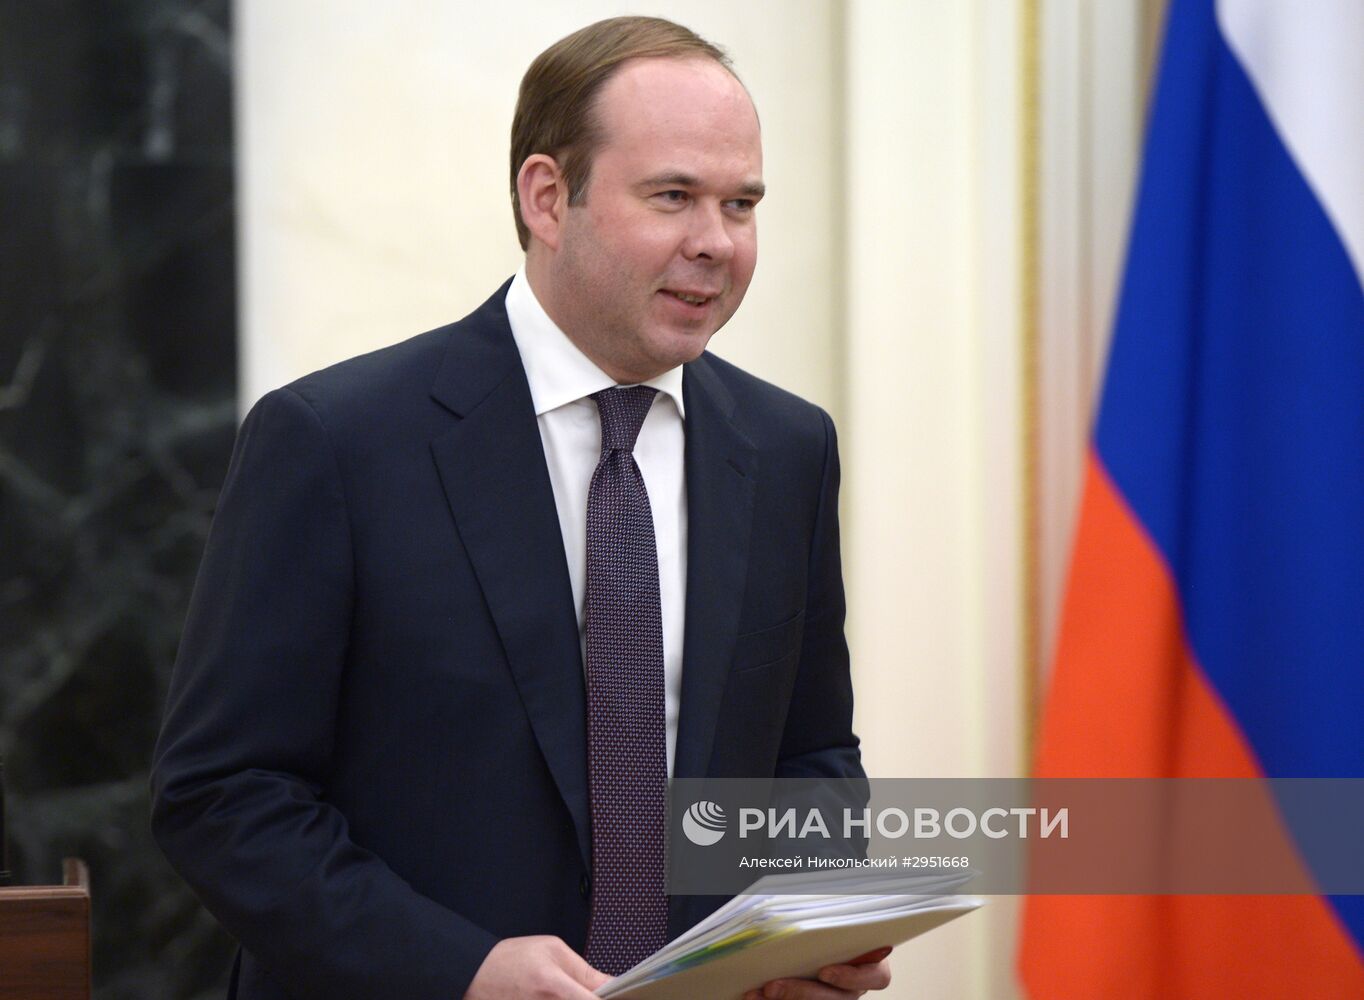 Президент РФ В. Путин провел в Кремле совещание по социально-экономическим вопросам